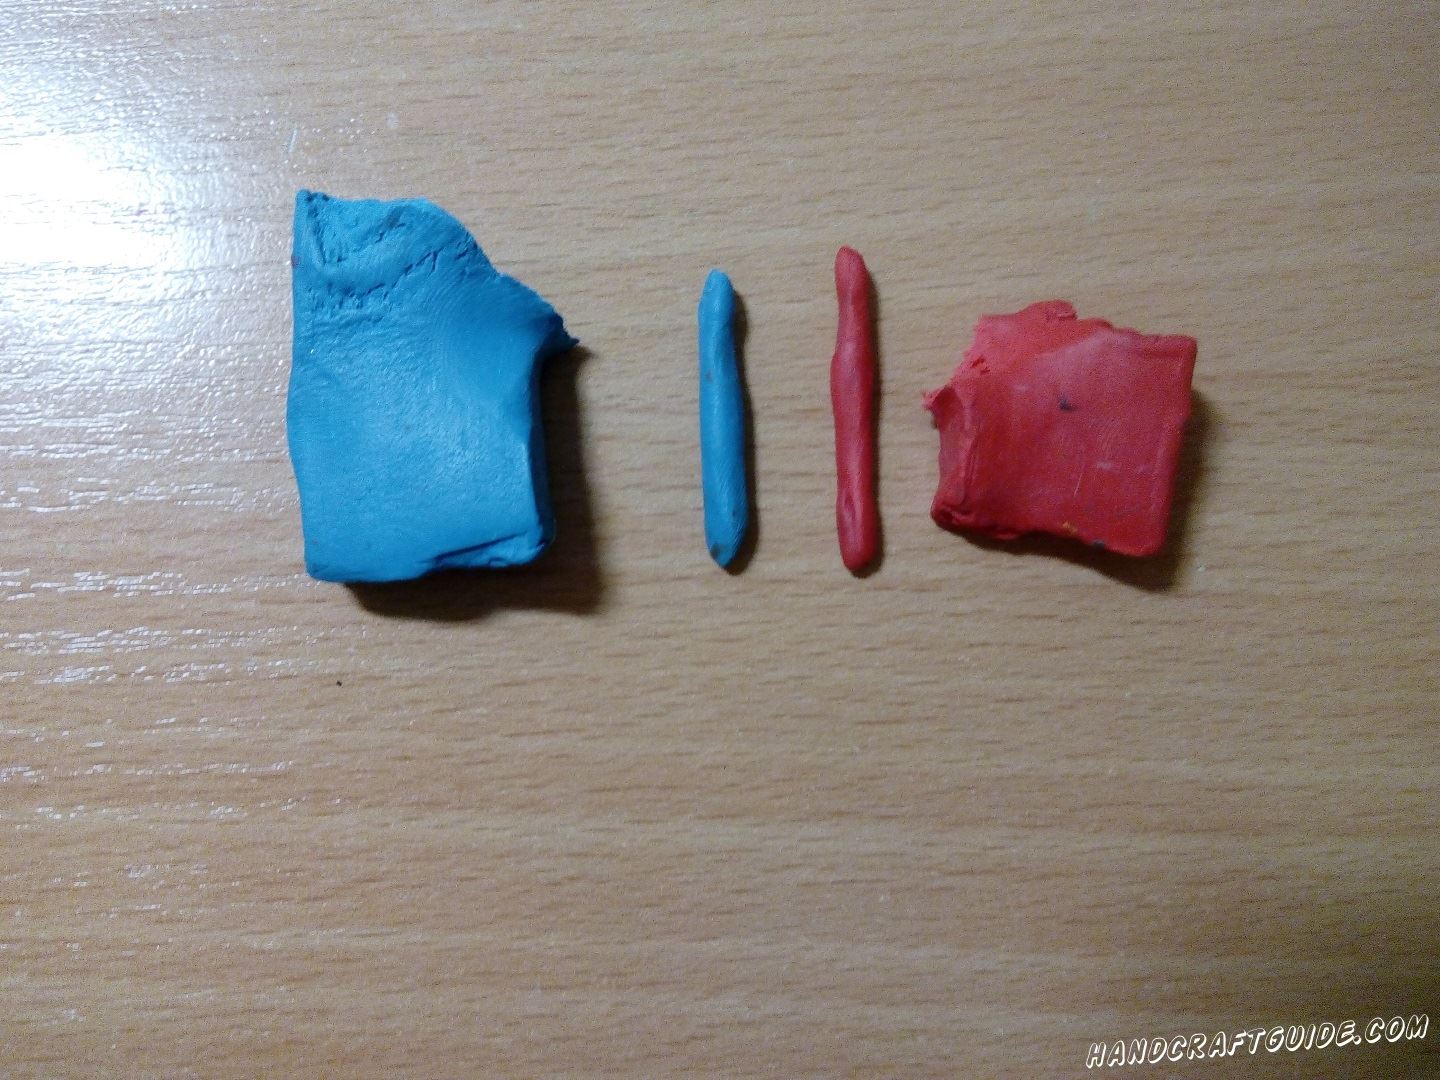 Затем берем красный и синий кусочки пластилина и лепим из них 2 тонкие круглые палочки